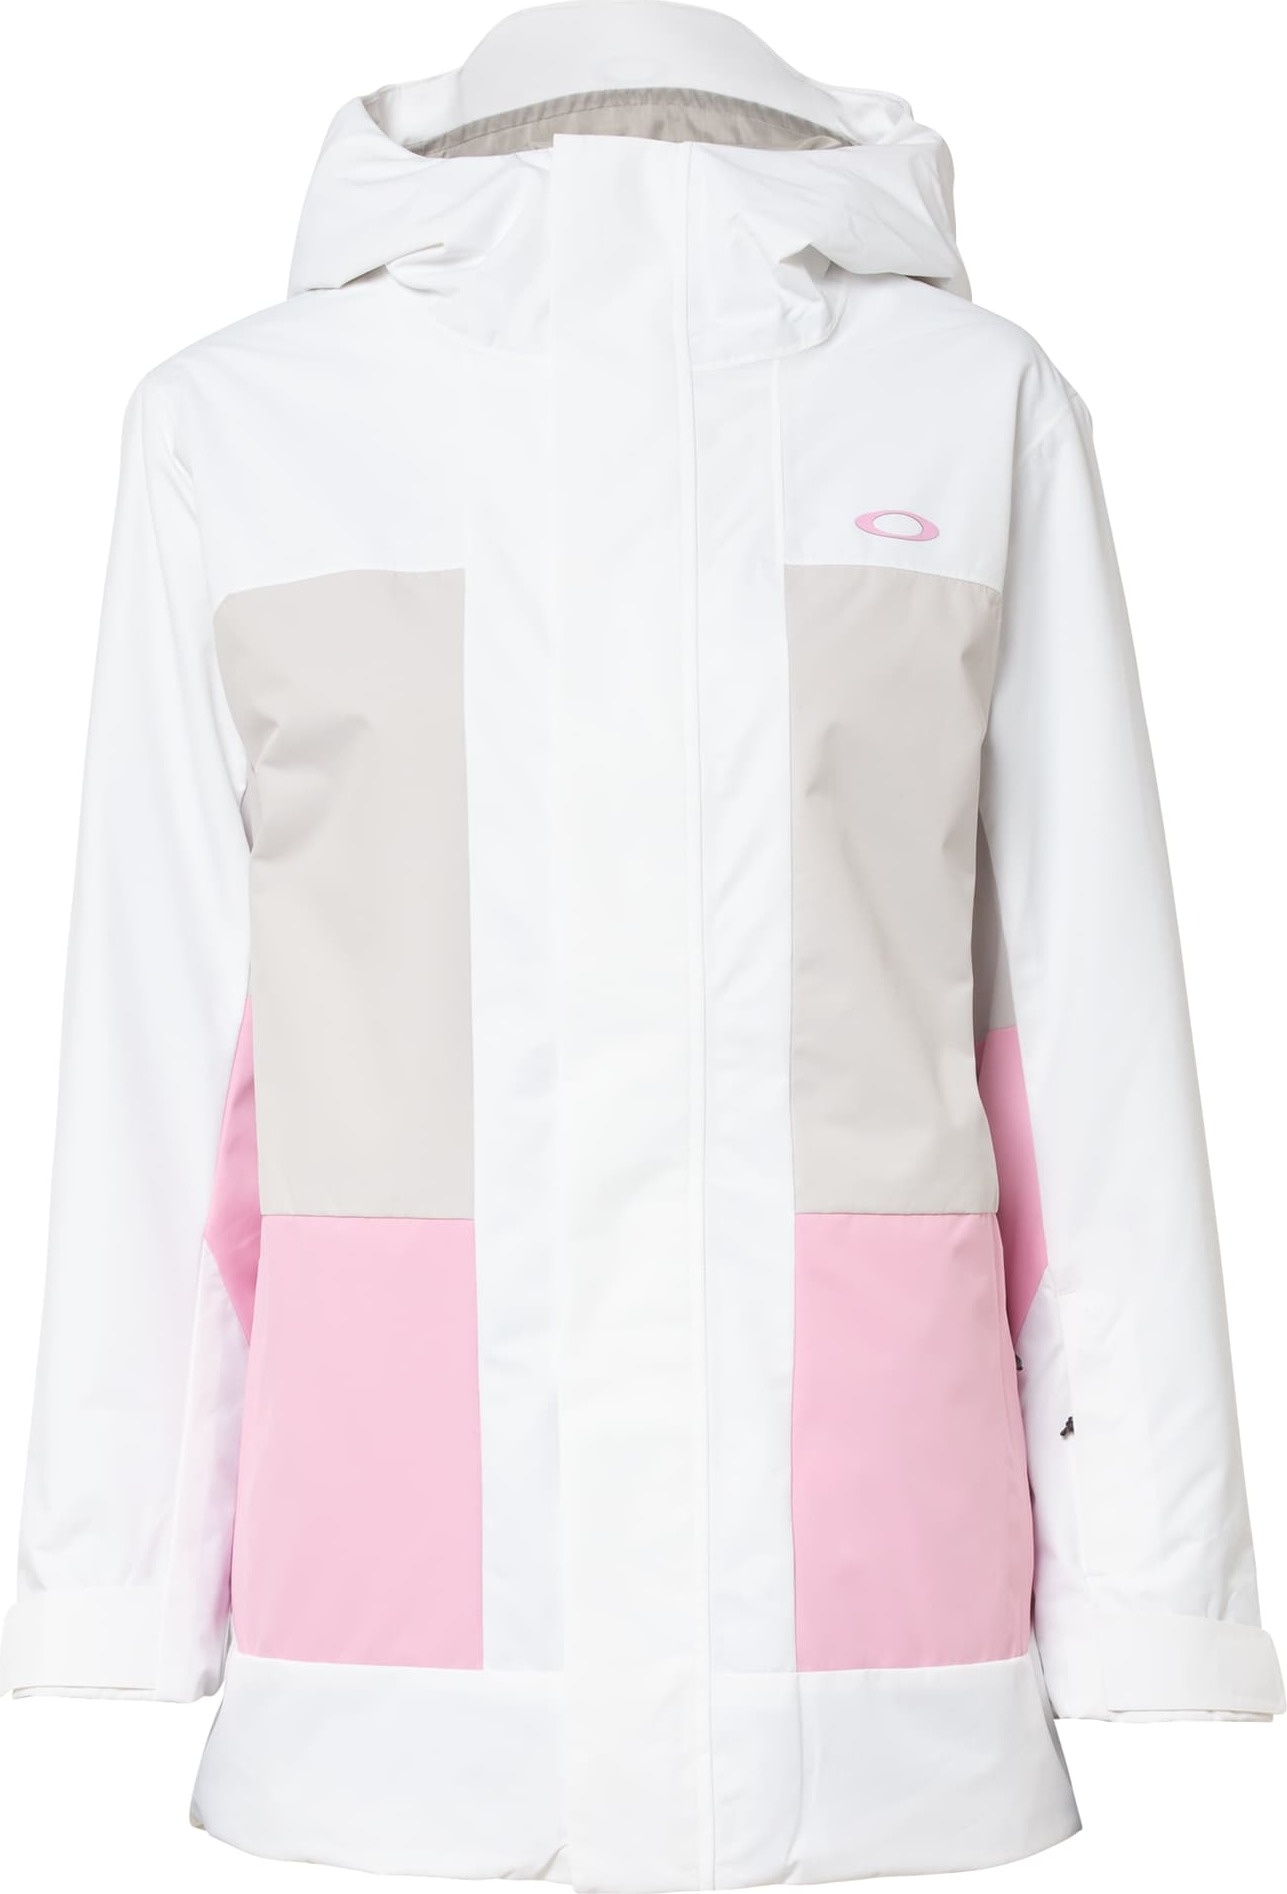 OAKLEY Outdoorová bunda 'BEAUFORT' režná / světle růžová / bílá